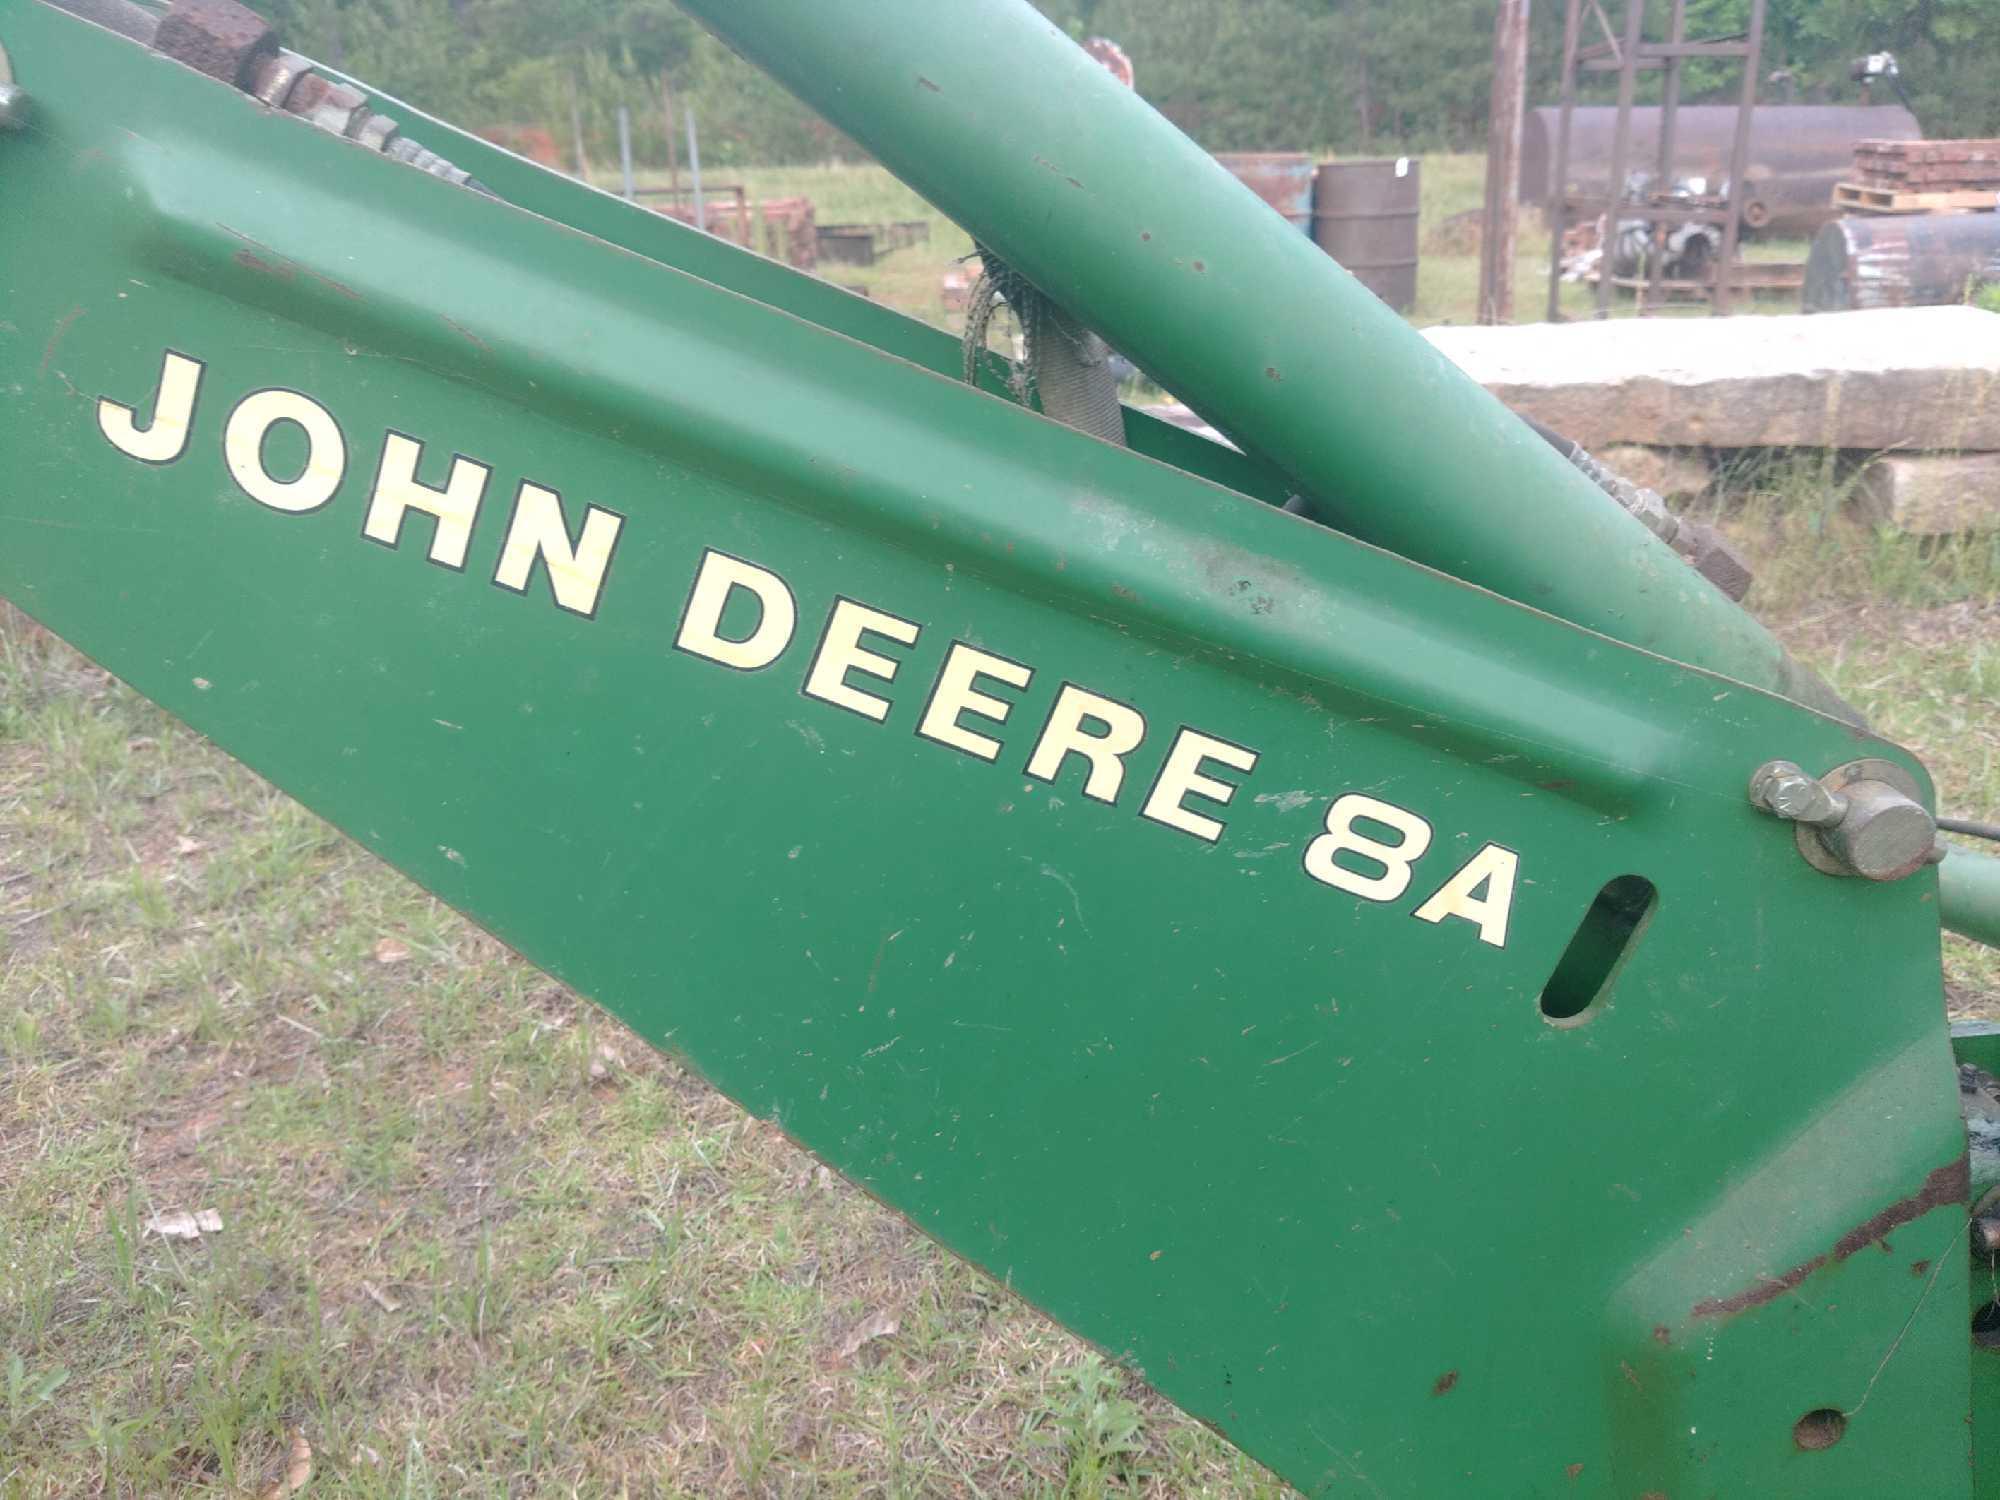 John Deere 8A backhoe